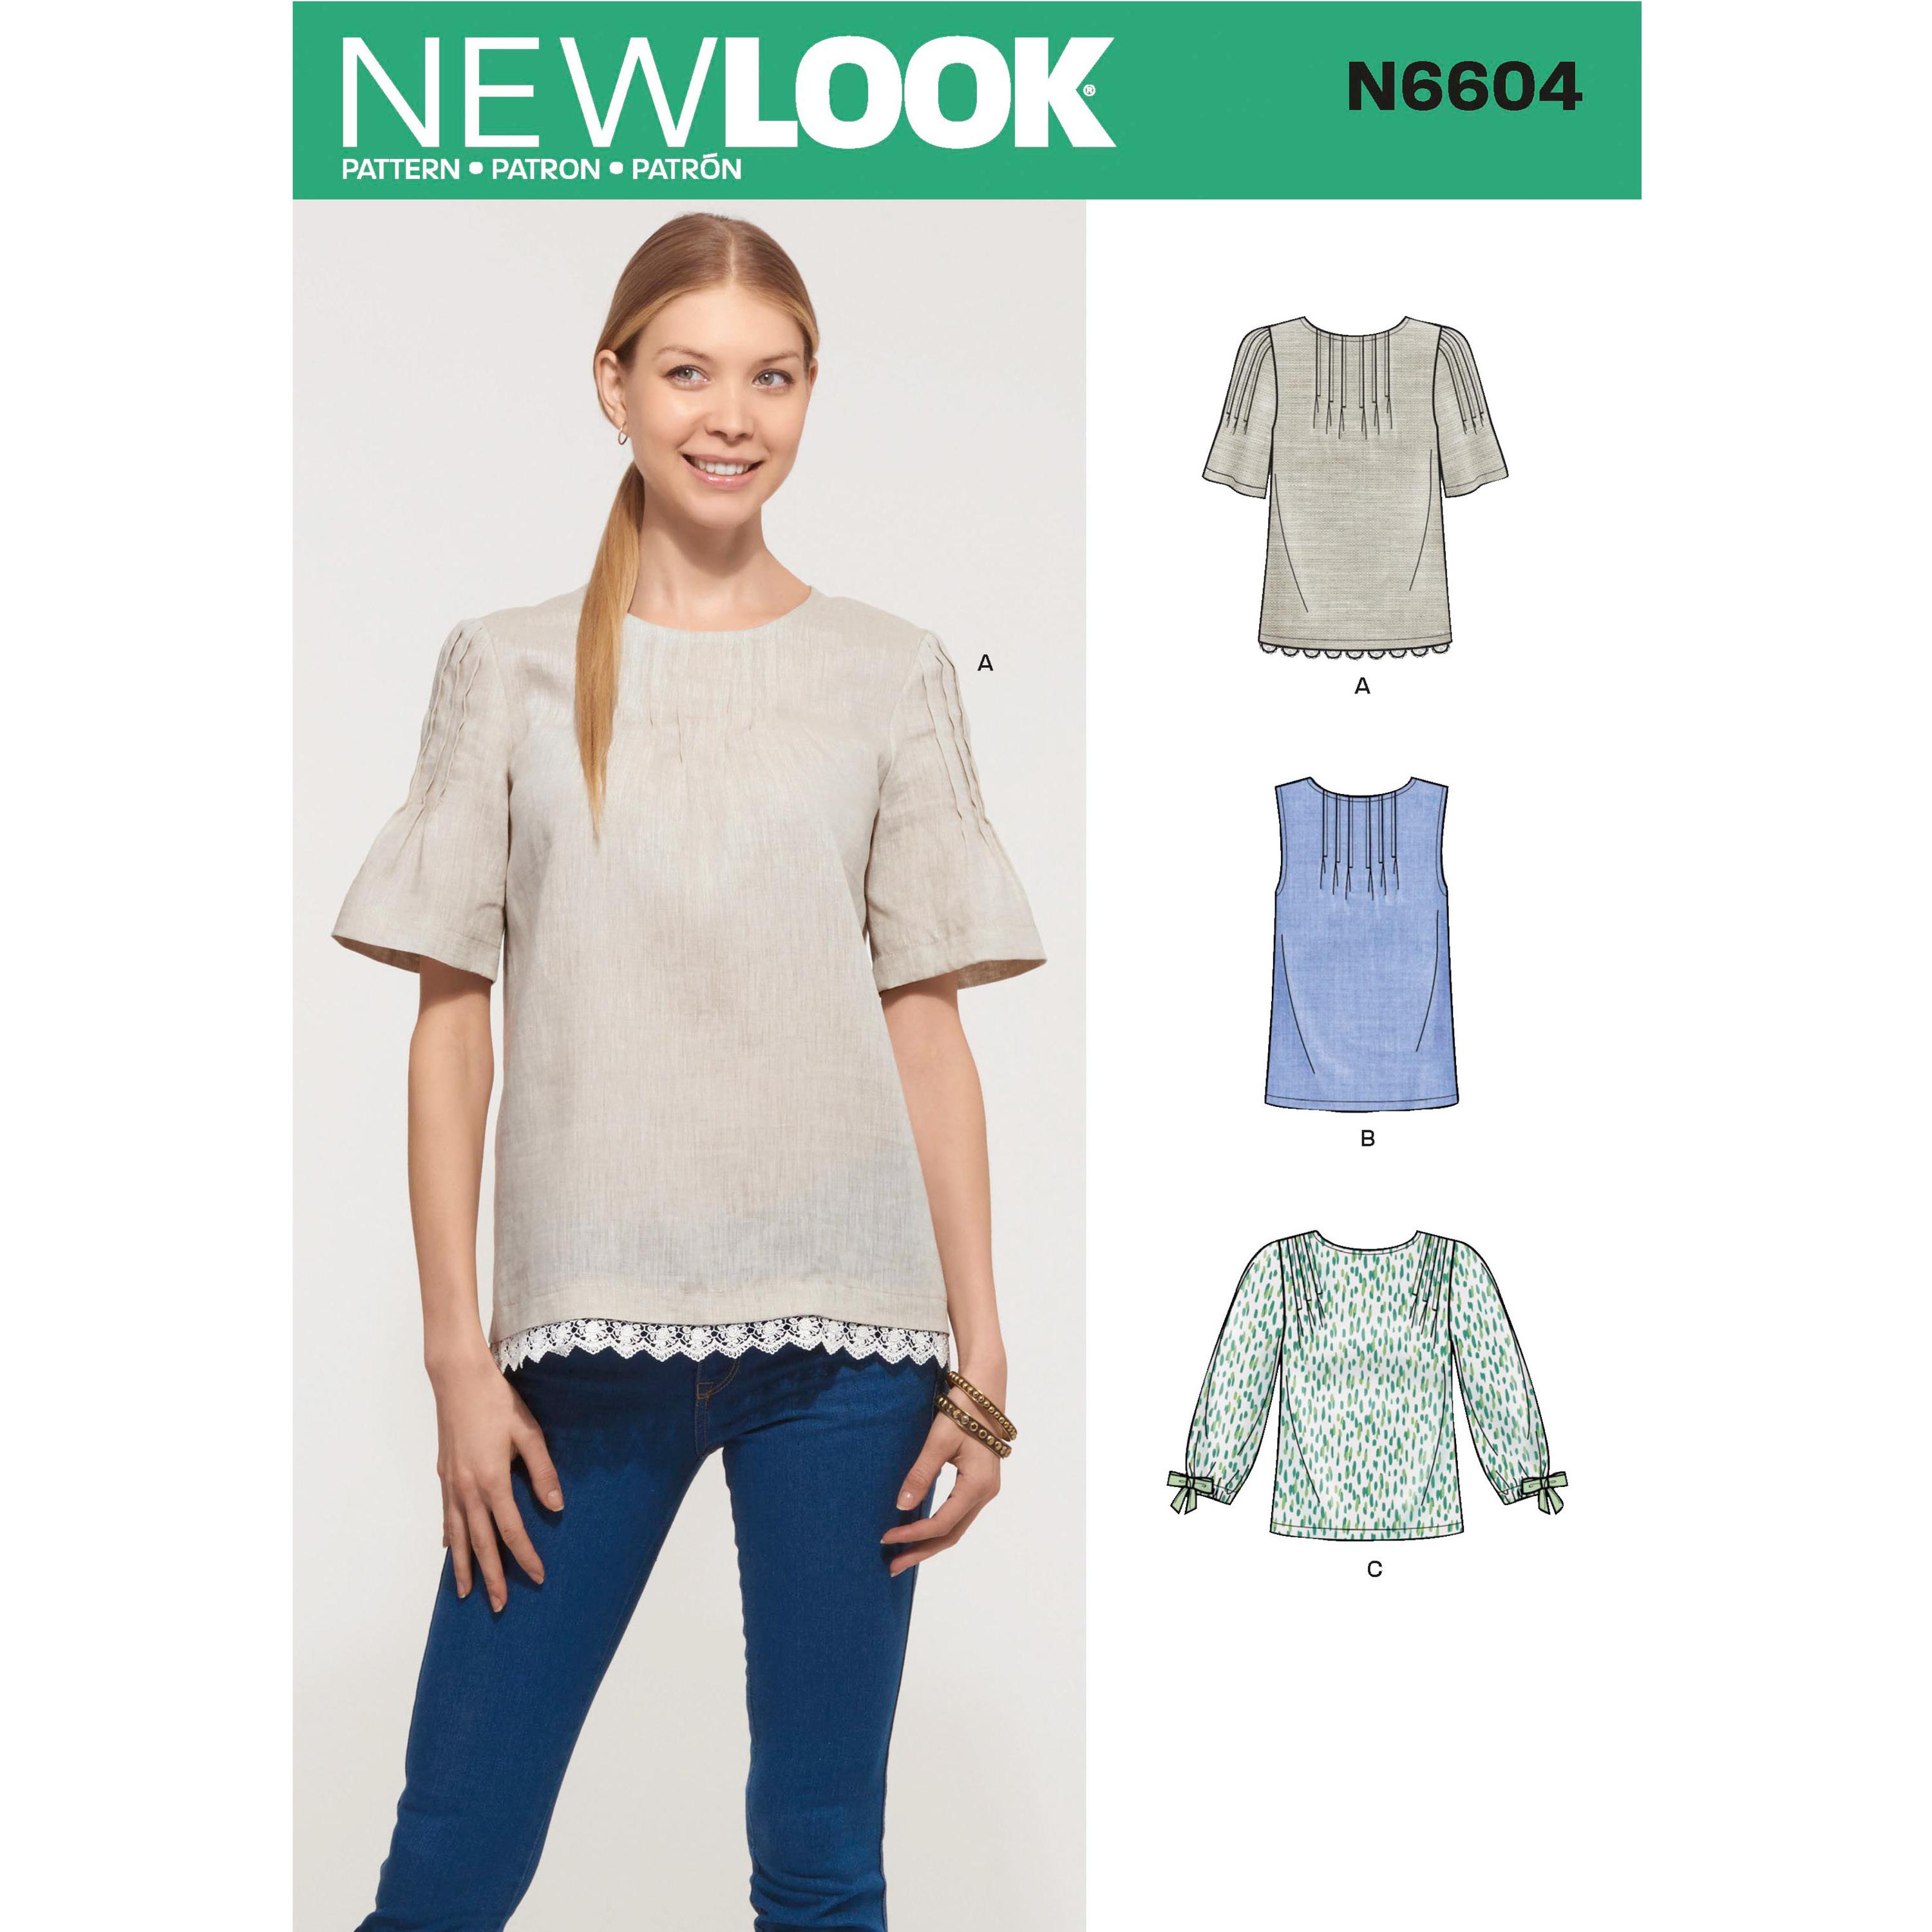 NewLook Sewing Pattern N6604 Misses' Tops